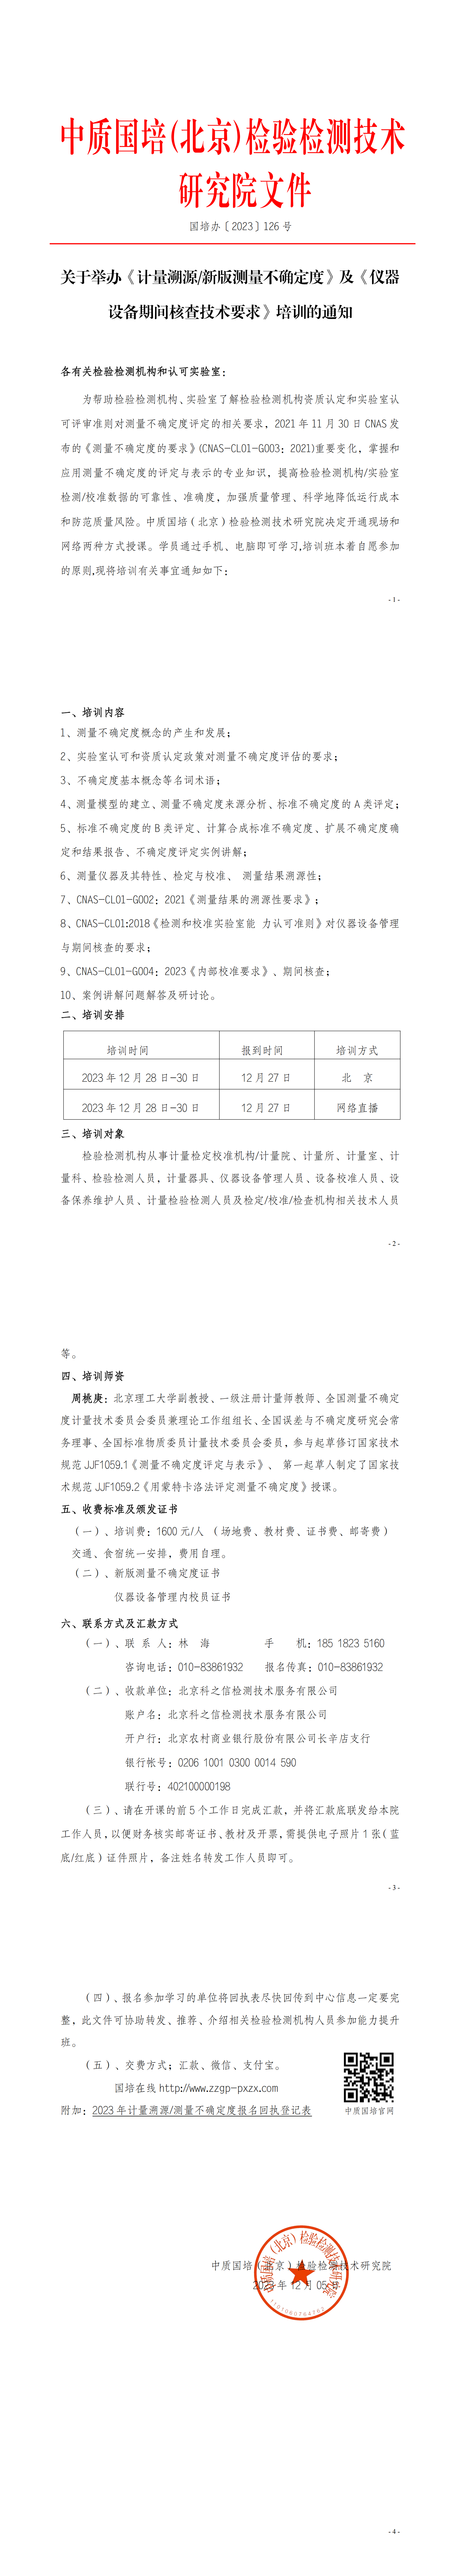 中质国培-2023年 计量溯 测量不确定度班(1)(5)(1)_00.png